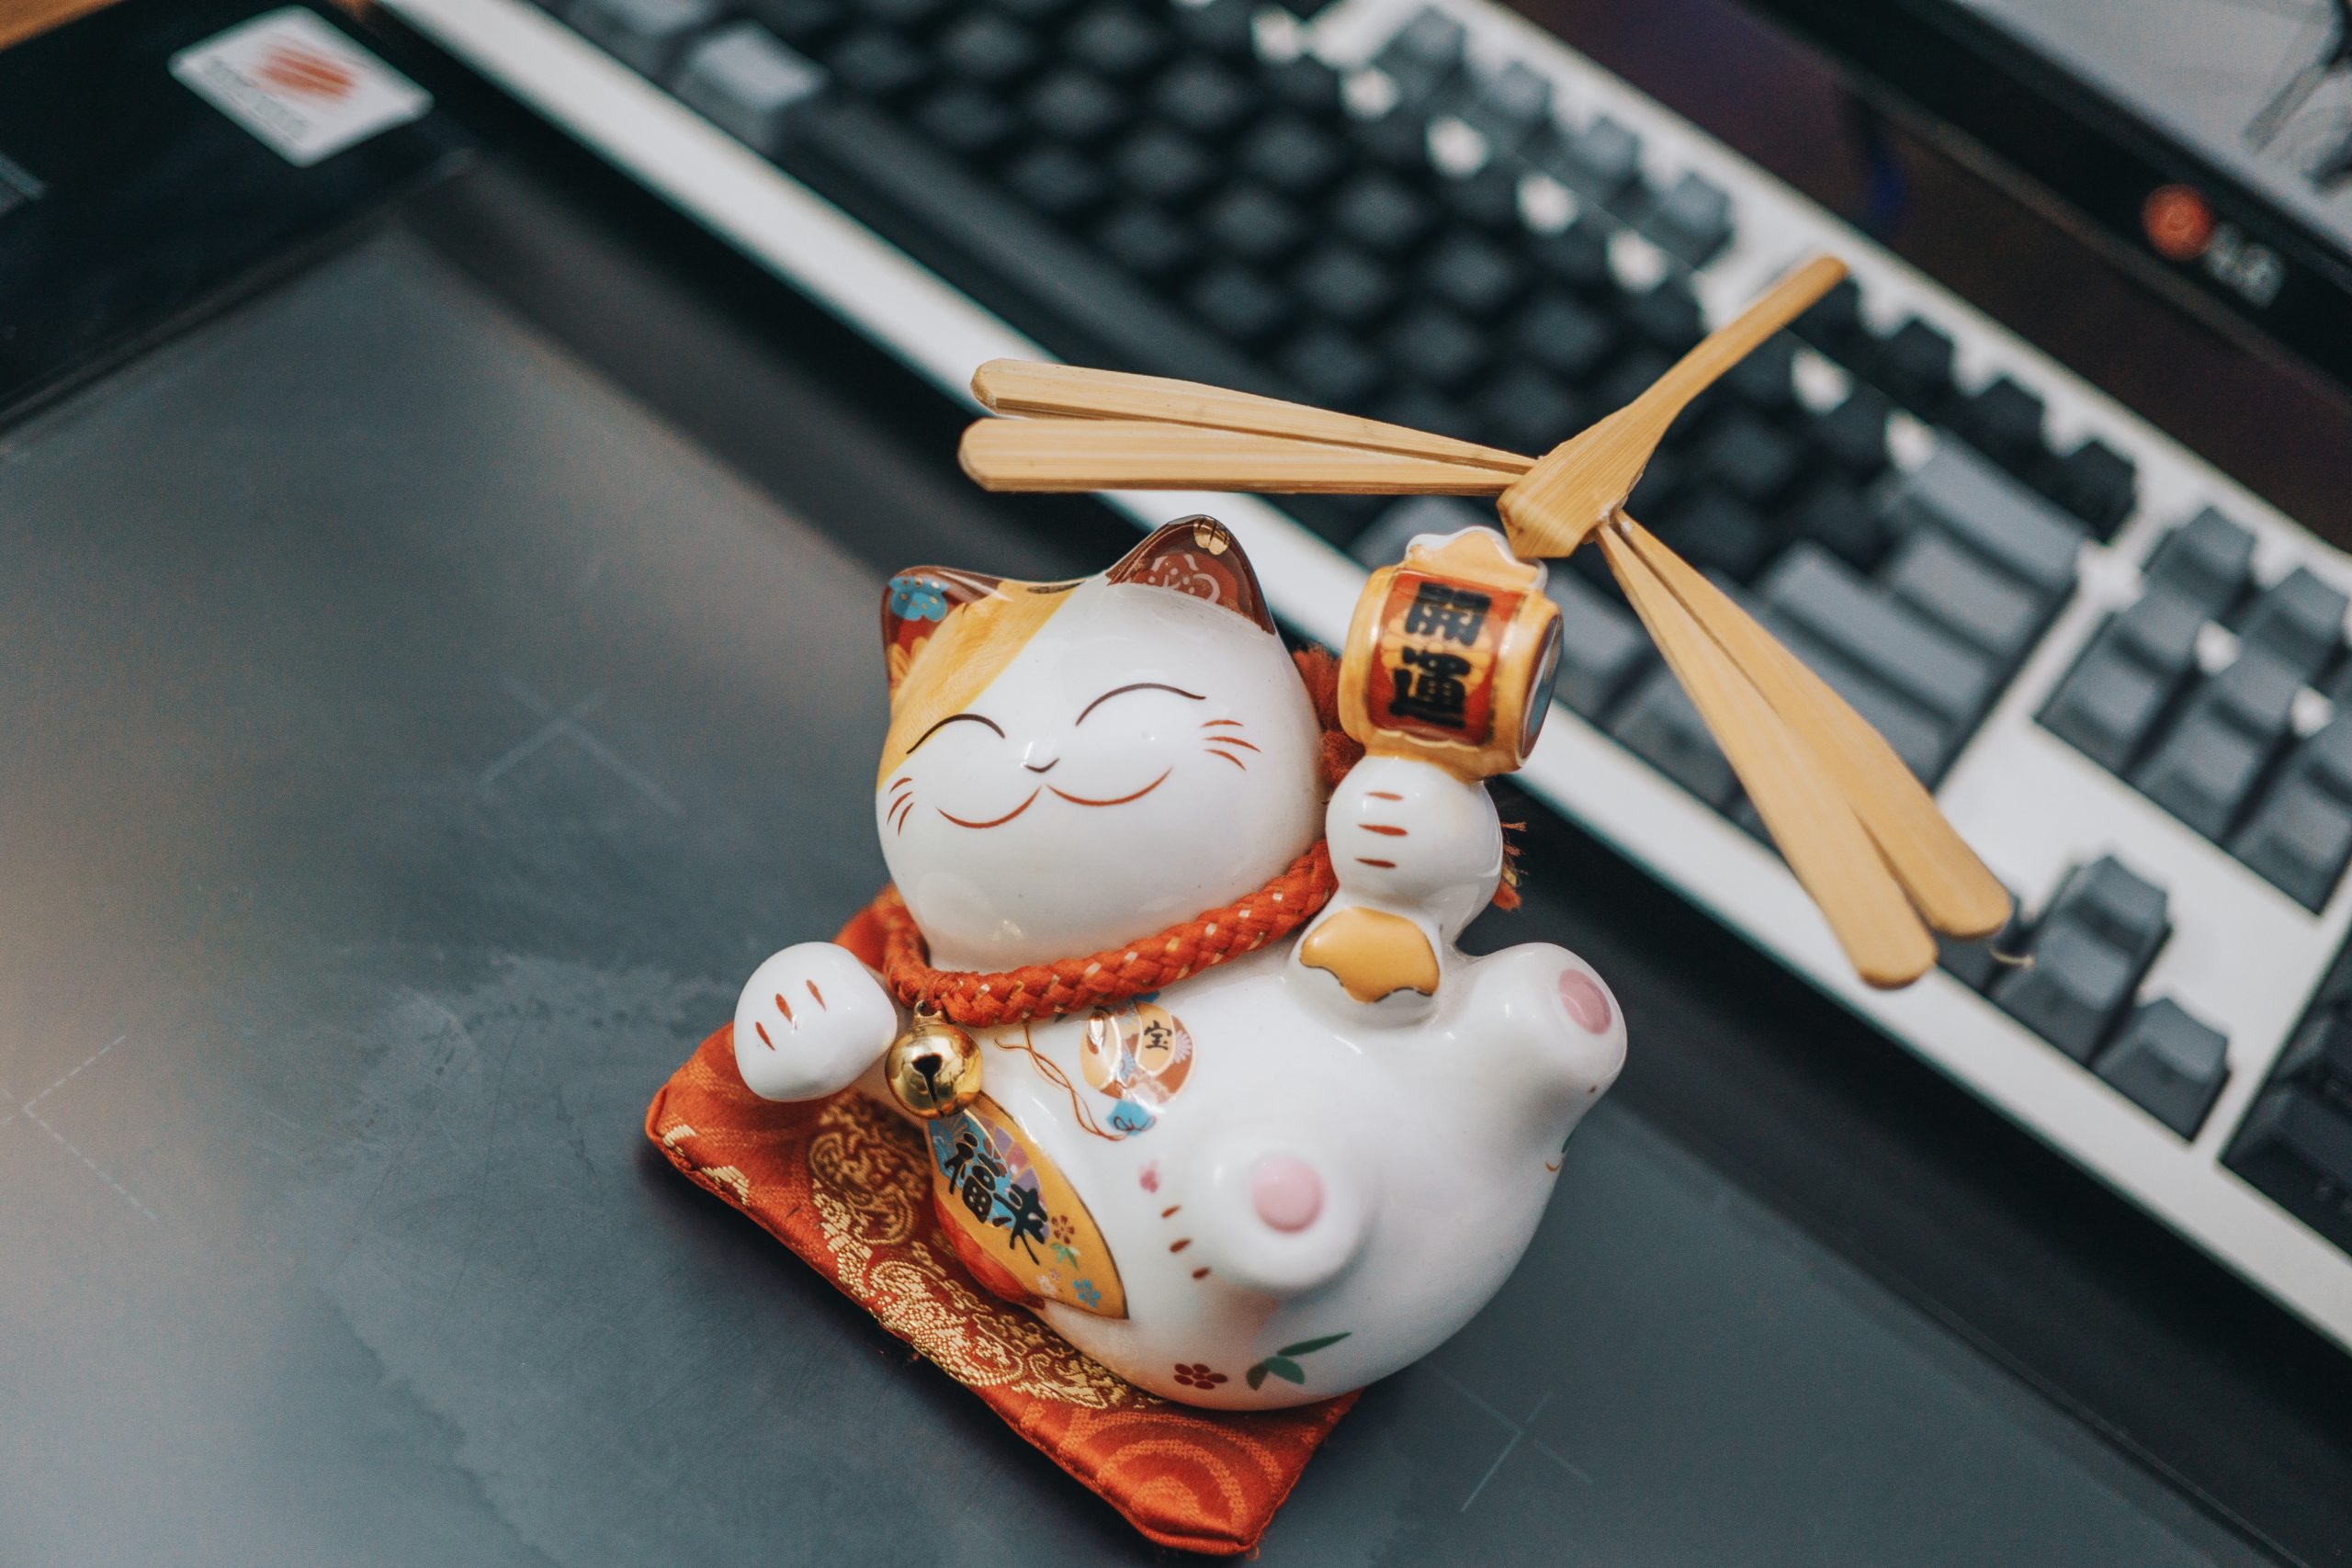 Mèo thần tài (Fortune cat) - Mèo thần tài là biểu tượng tài lộc trong văn hóa truyền thống của người Á Đông. Hãy xem hình ảnh về mèo thần tài để tiếp thêm sức mạnh và may mắn trong cuộc sống của bạn.